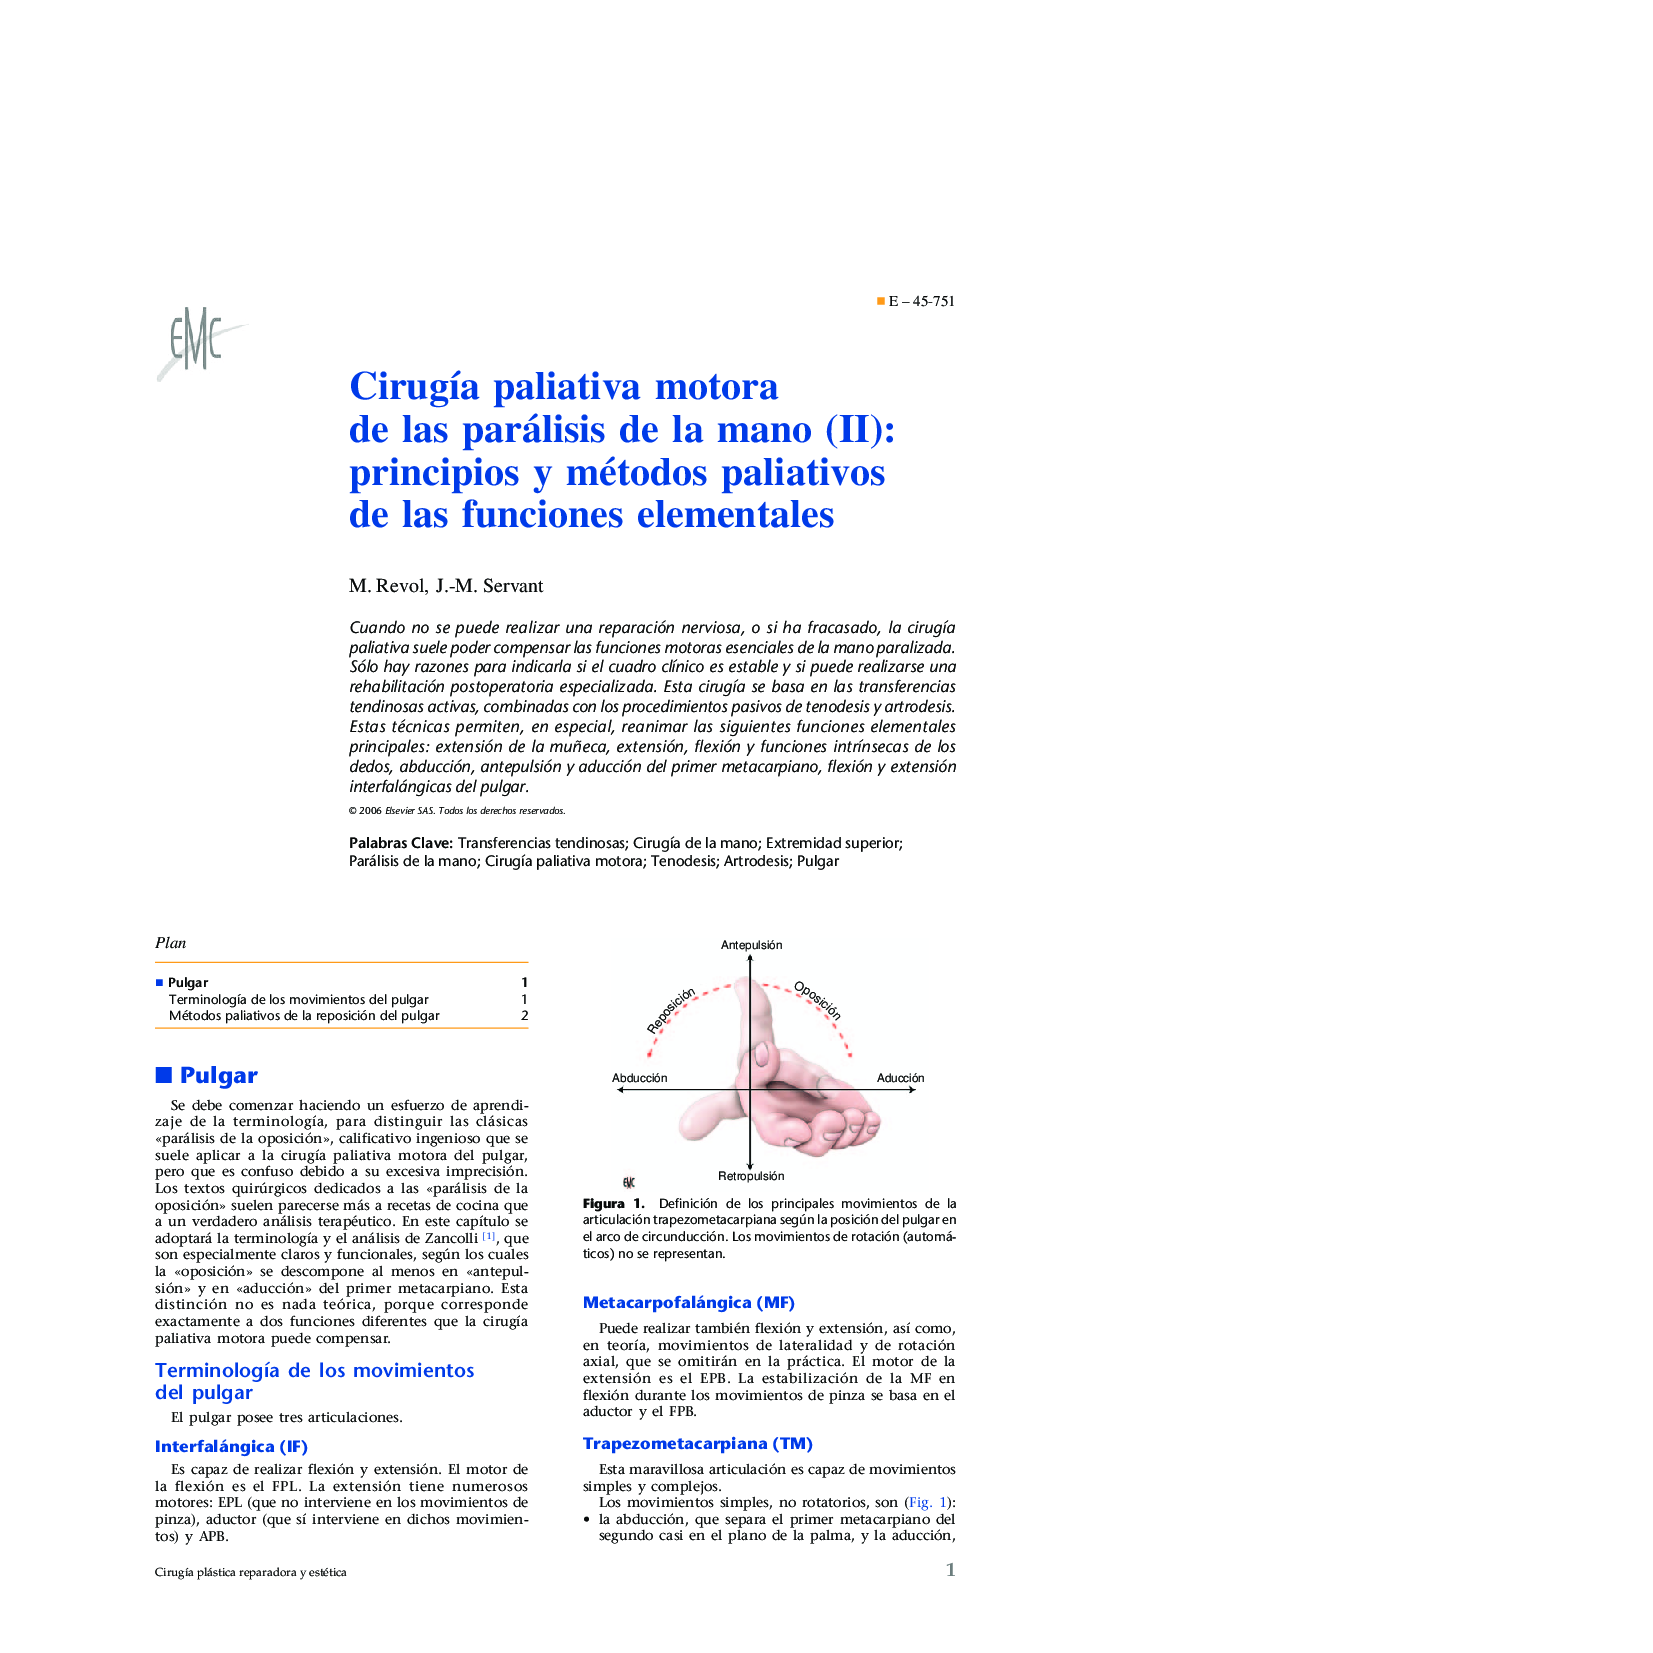 CirugÃ­a paliativa motora de las parálisis de la mano (II): principios y métodos paliativos de las funciones elementales